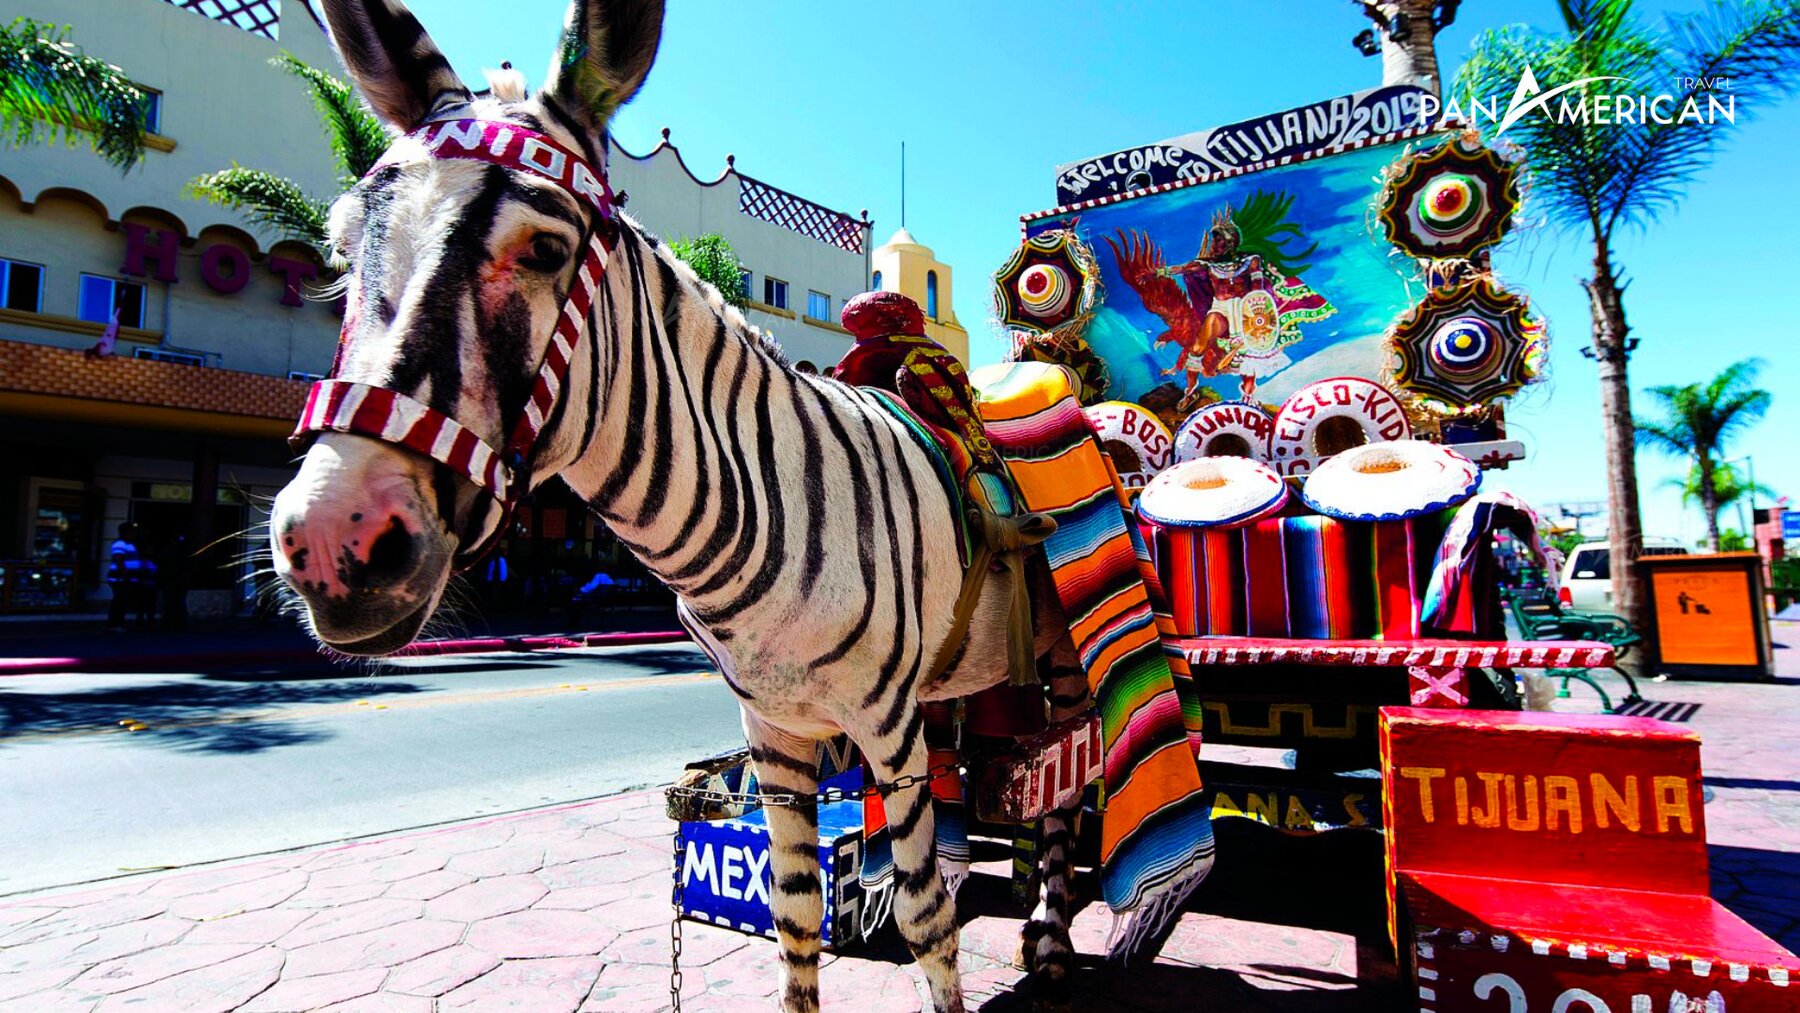 Avenida Revolucion - Địa điểm nên ghé thăm khi đến Tijuana Mexico 